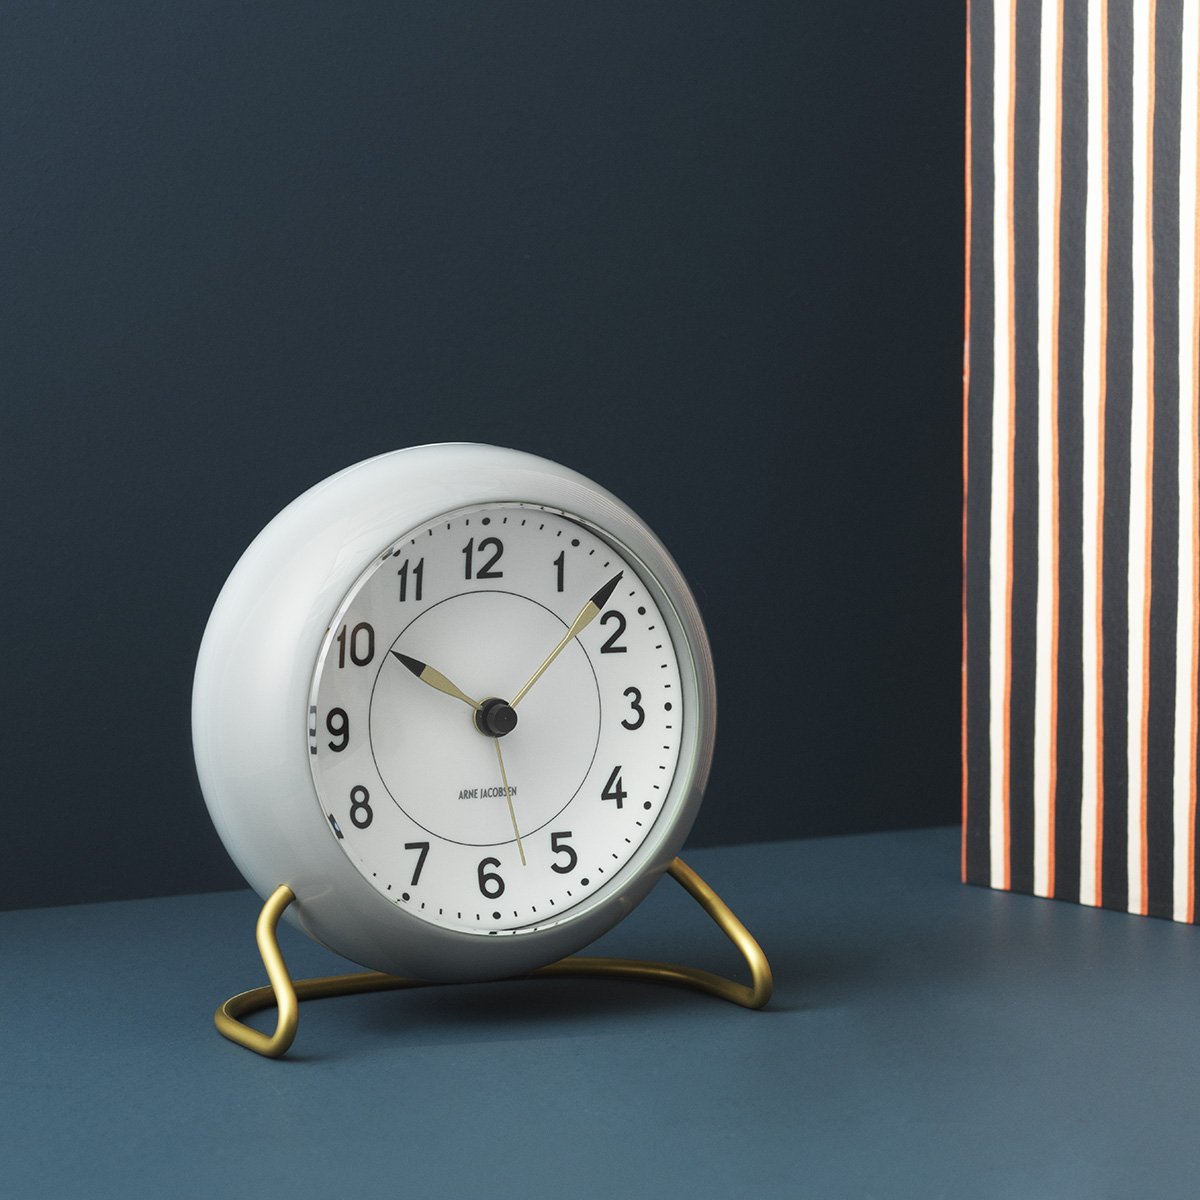 Arne Jacobsen Station bordsklocka med larmgrå och vitt, 12 cm